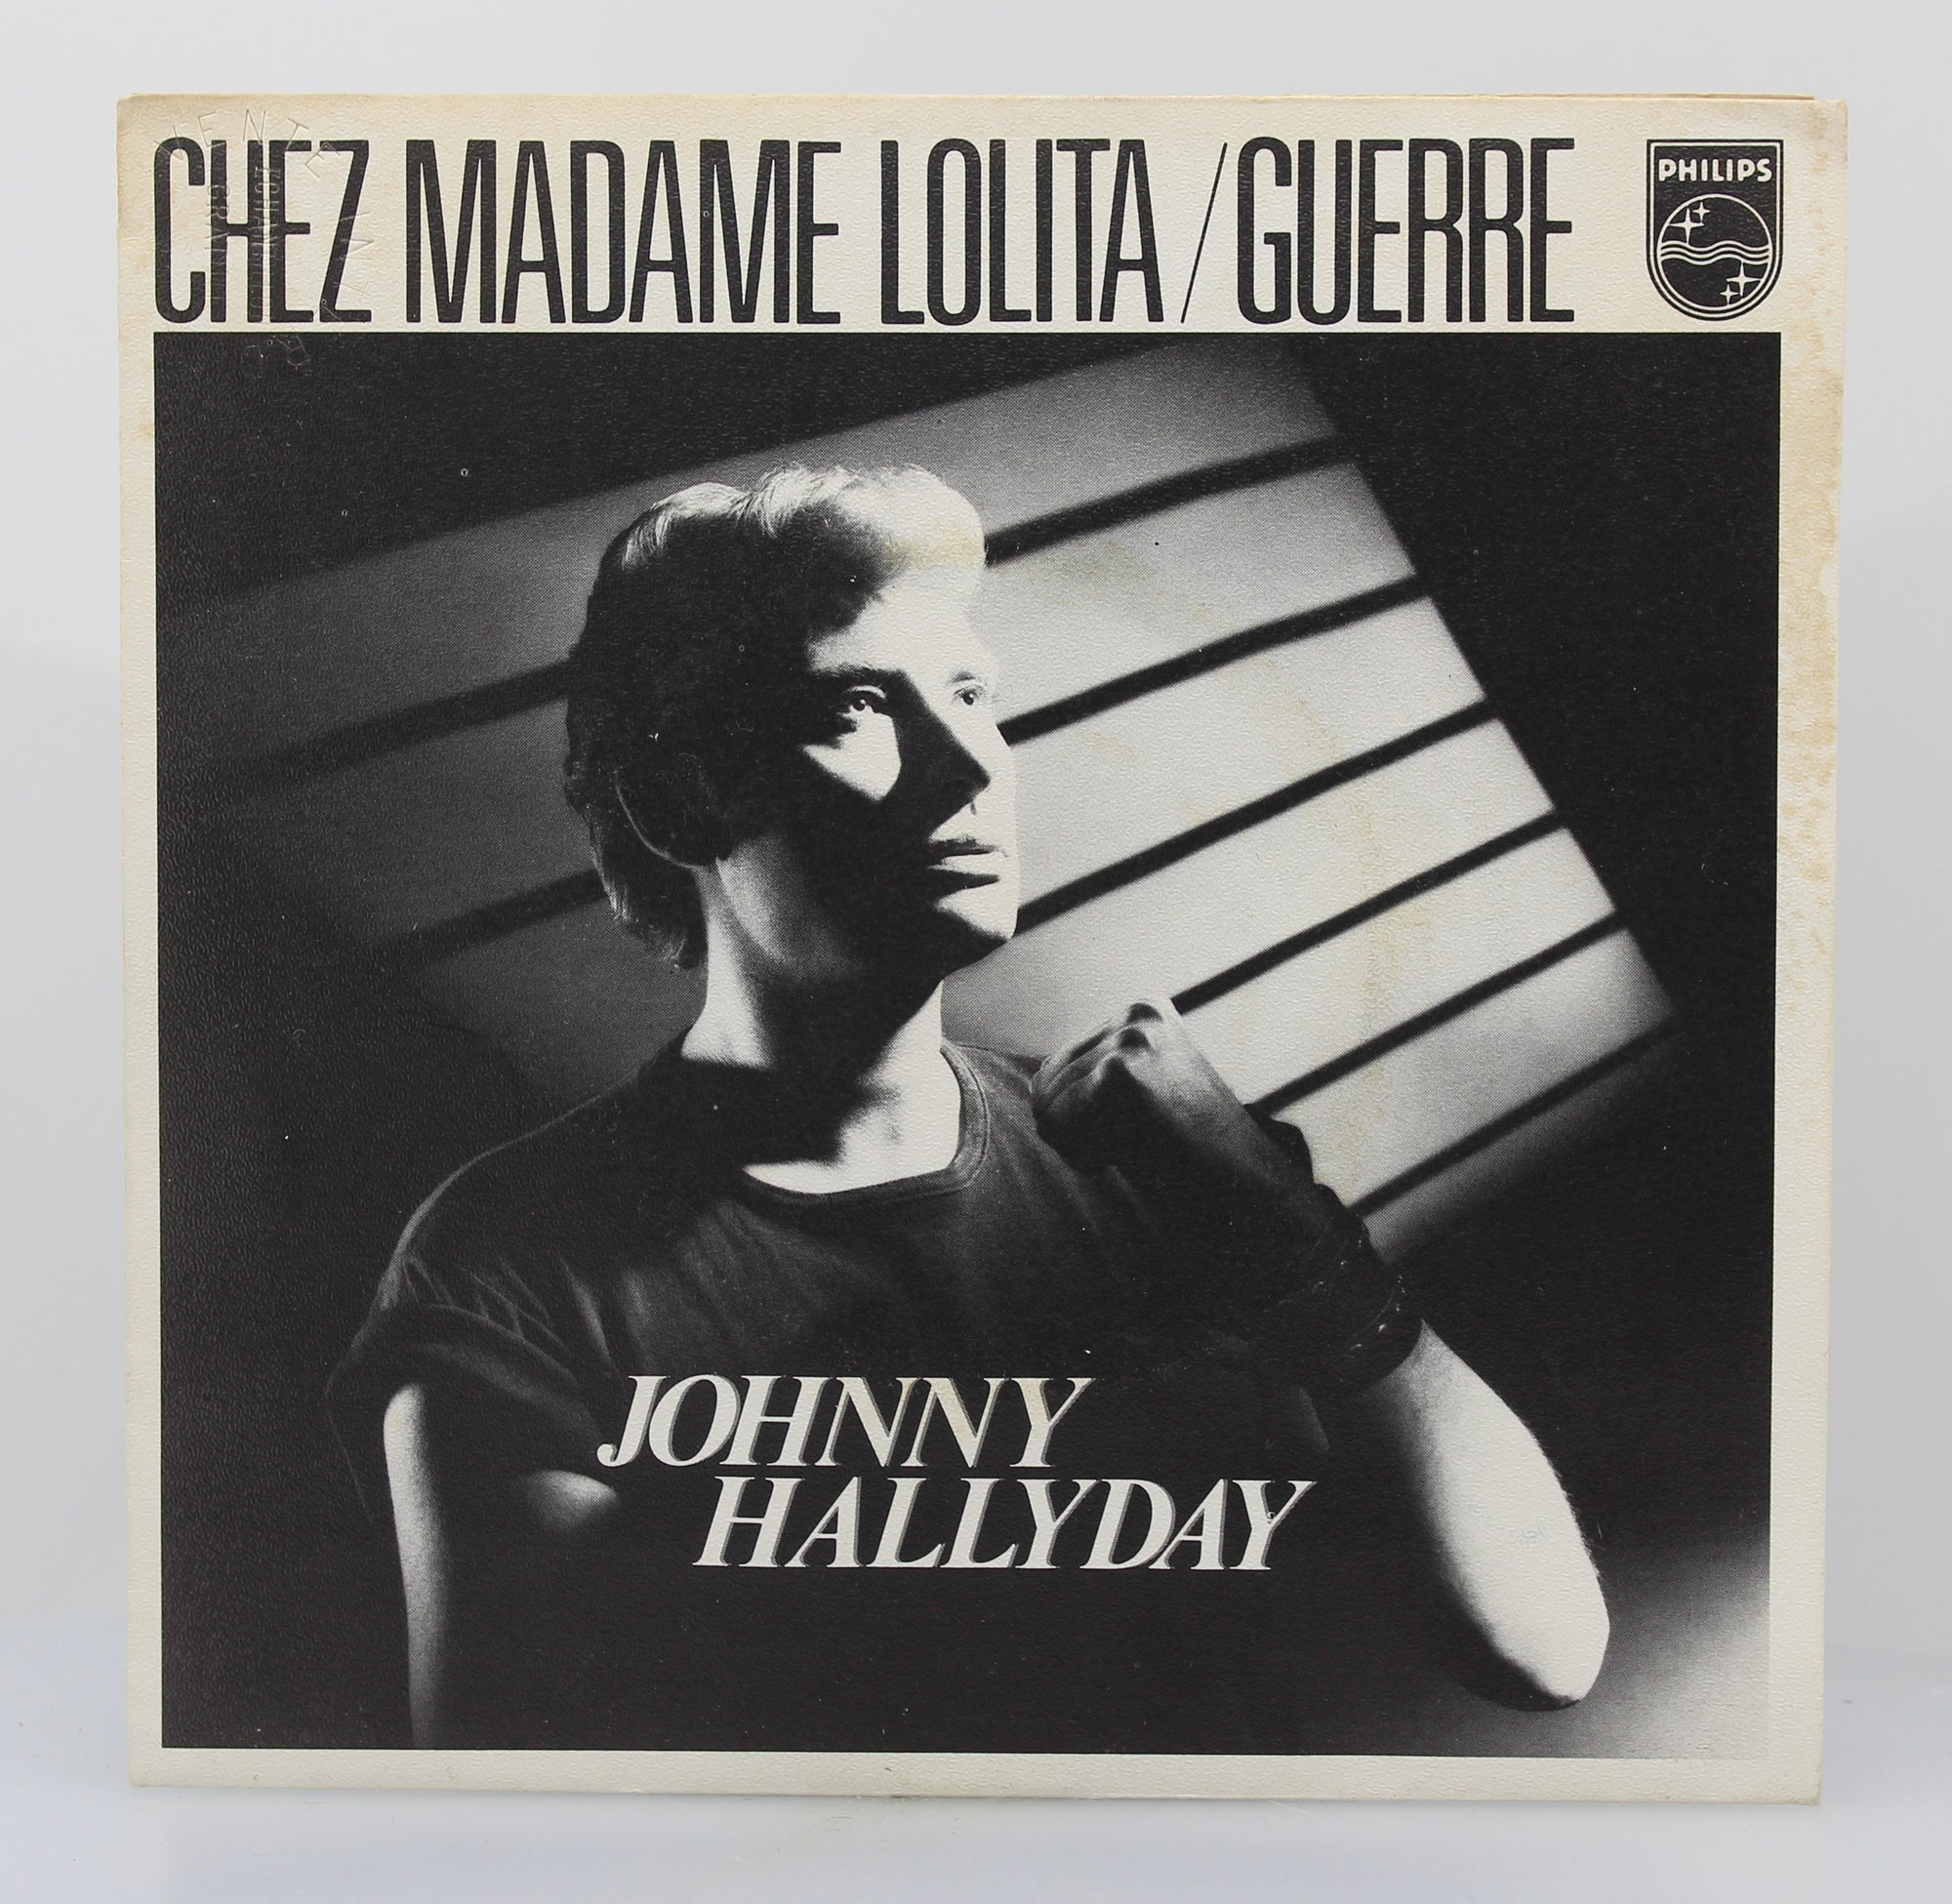 100% Vinyle : J'ai oublié de vivre - Johnny Hallyday